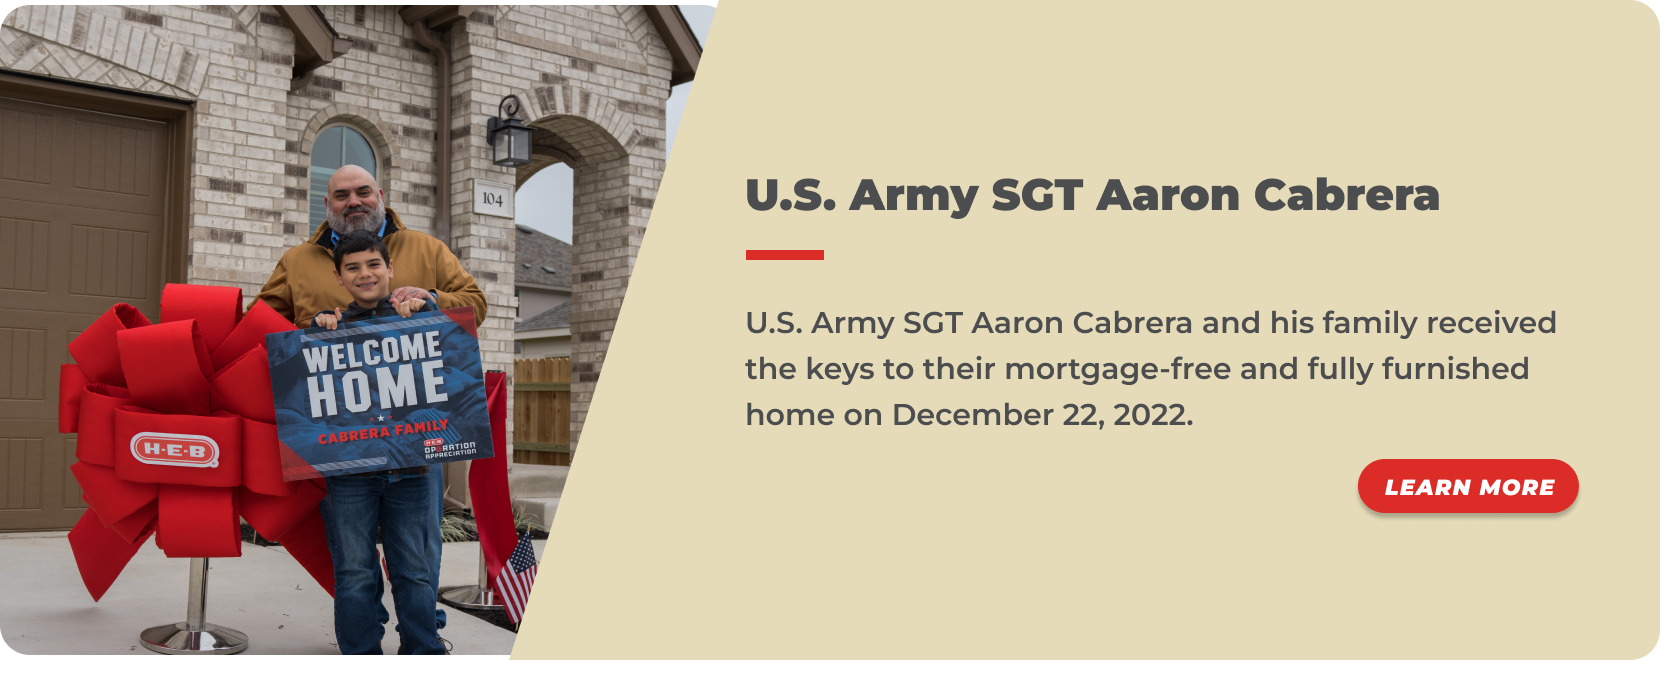 39 - U.S. Army SGT Aaron Cabrera